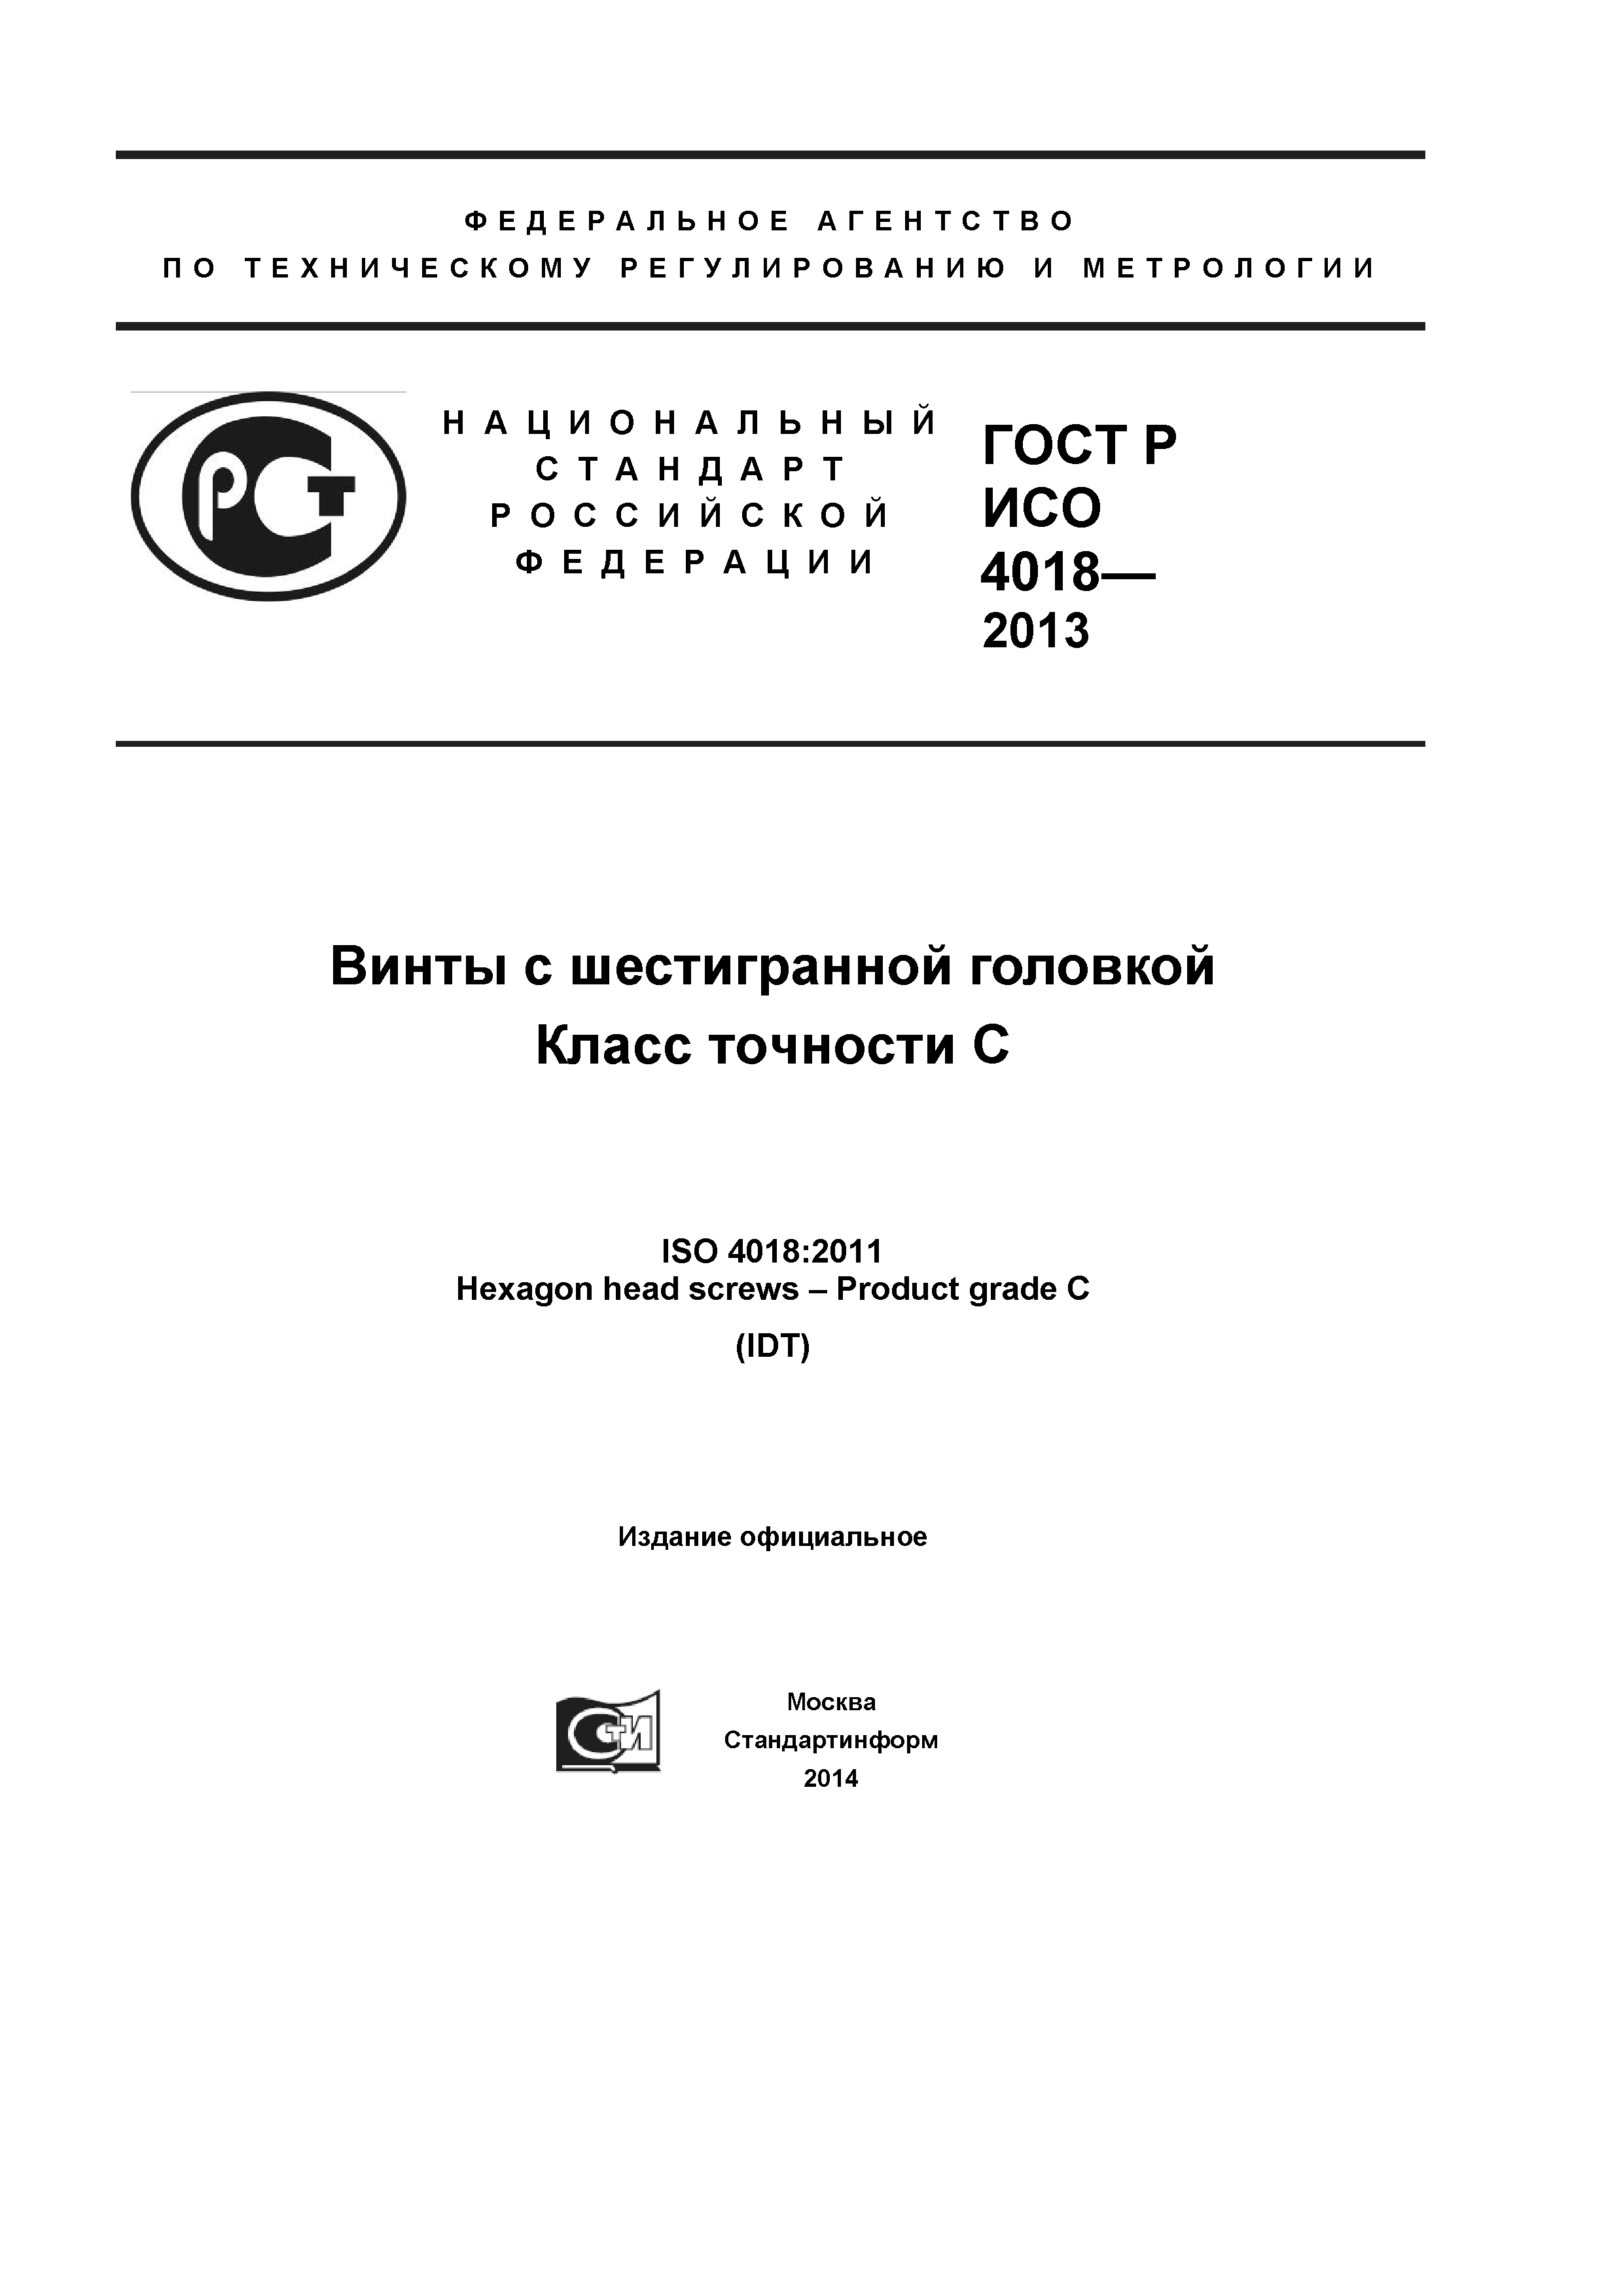 ГОСТ Р ИСО 4018-2013